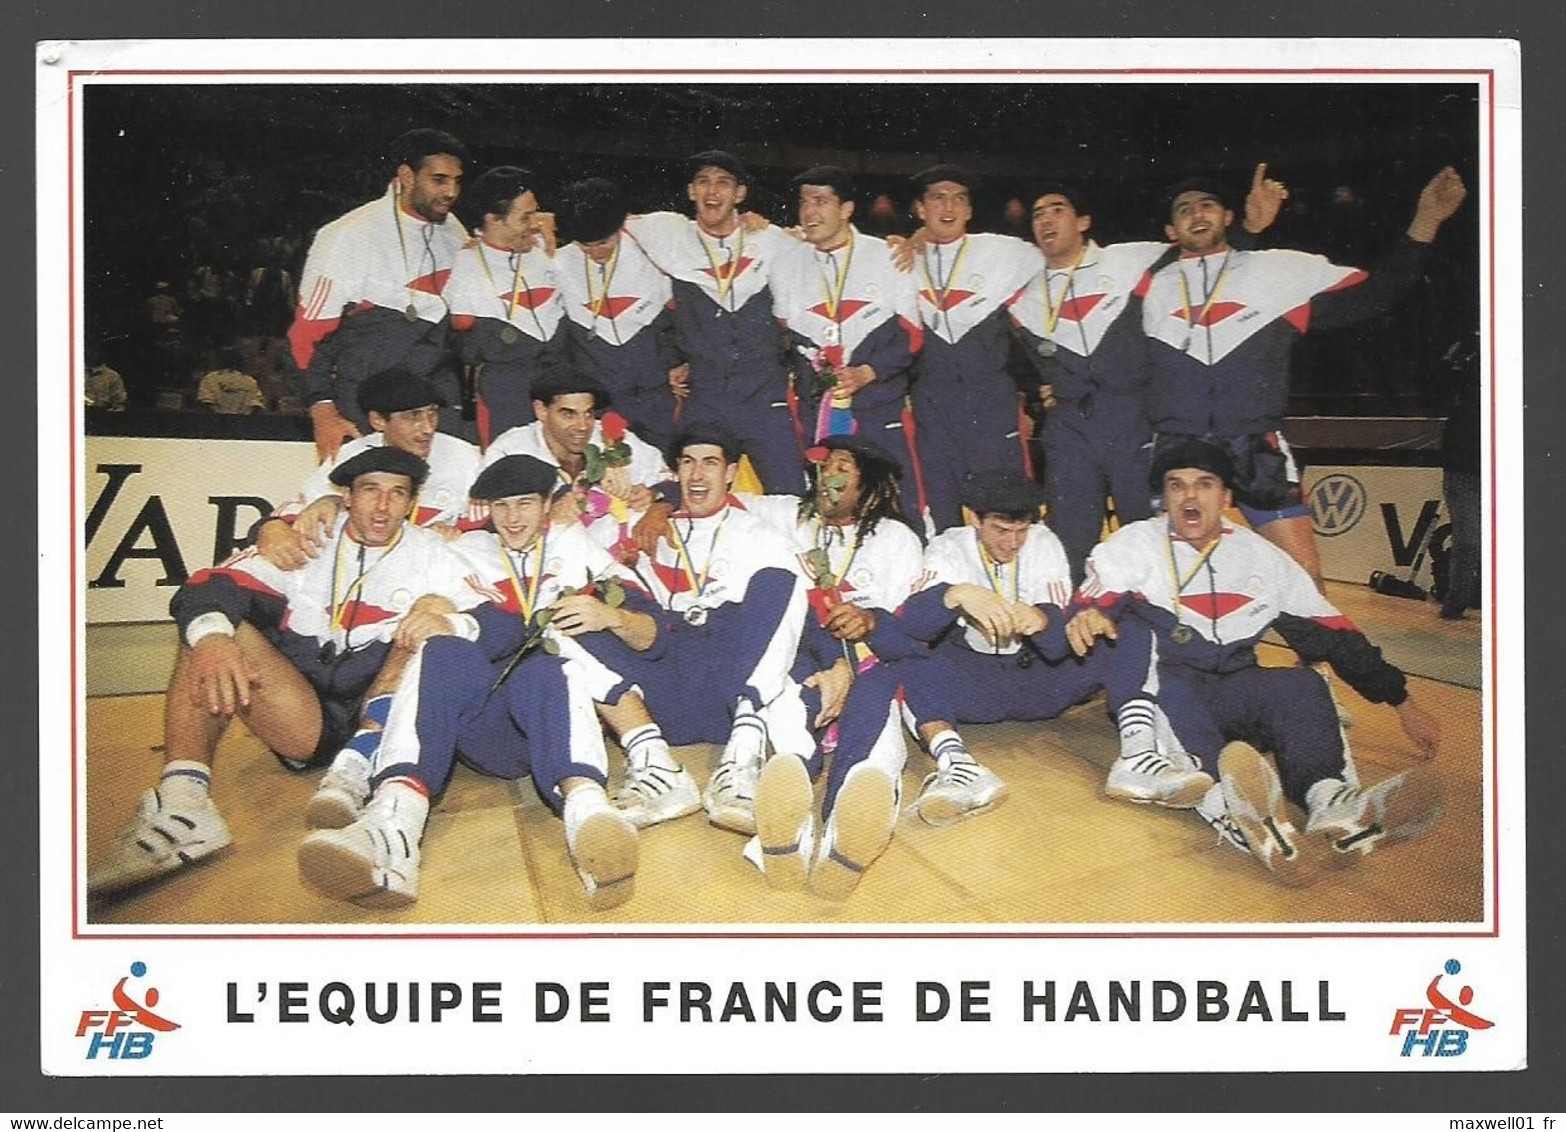 I6 - Equipe De France De Handball 1993 FFHB - Handball